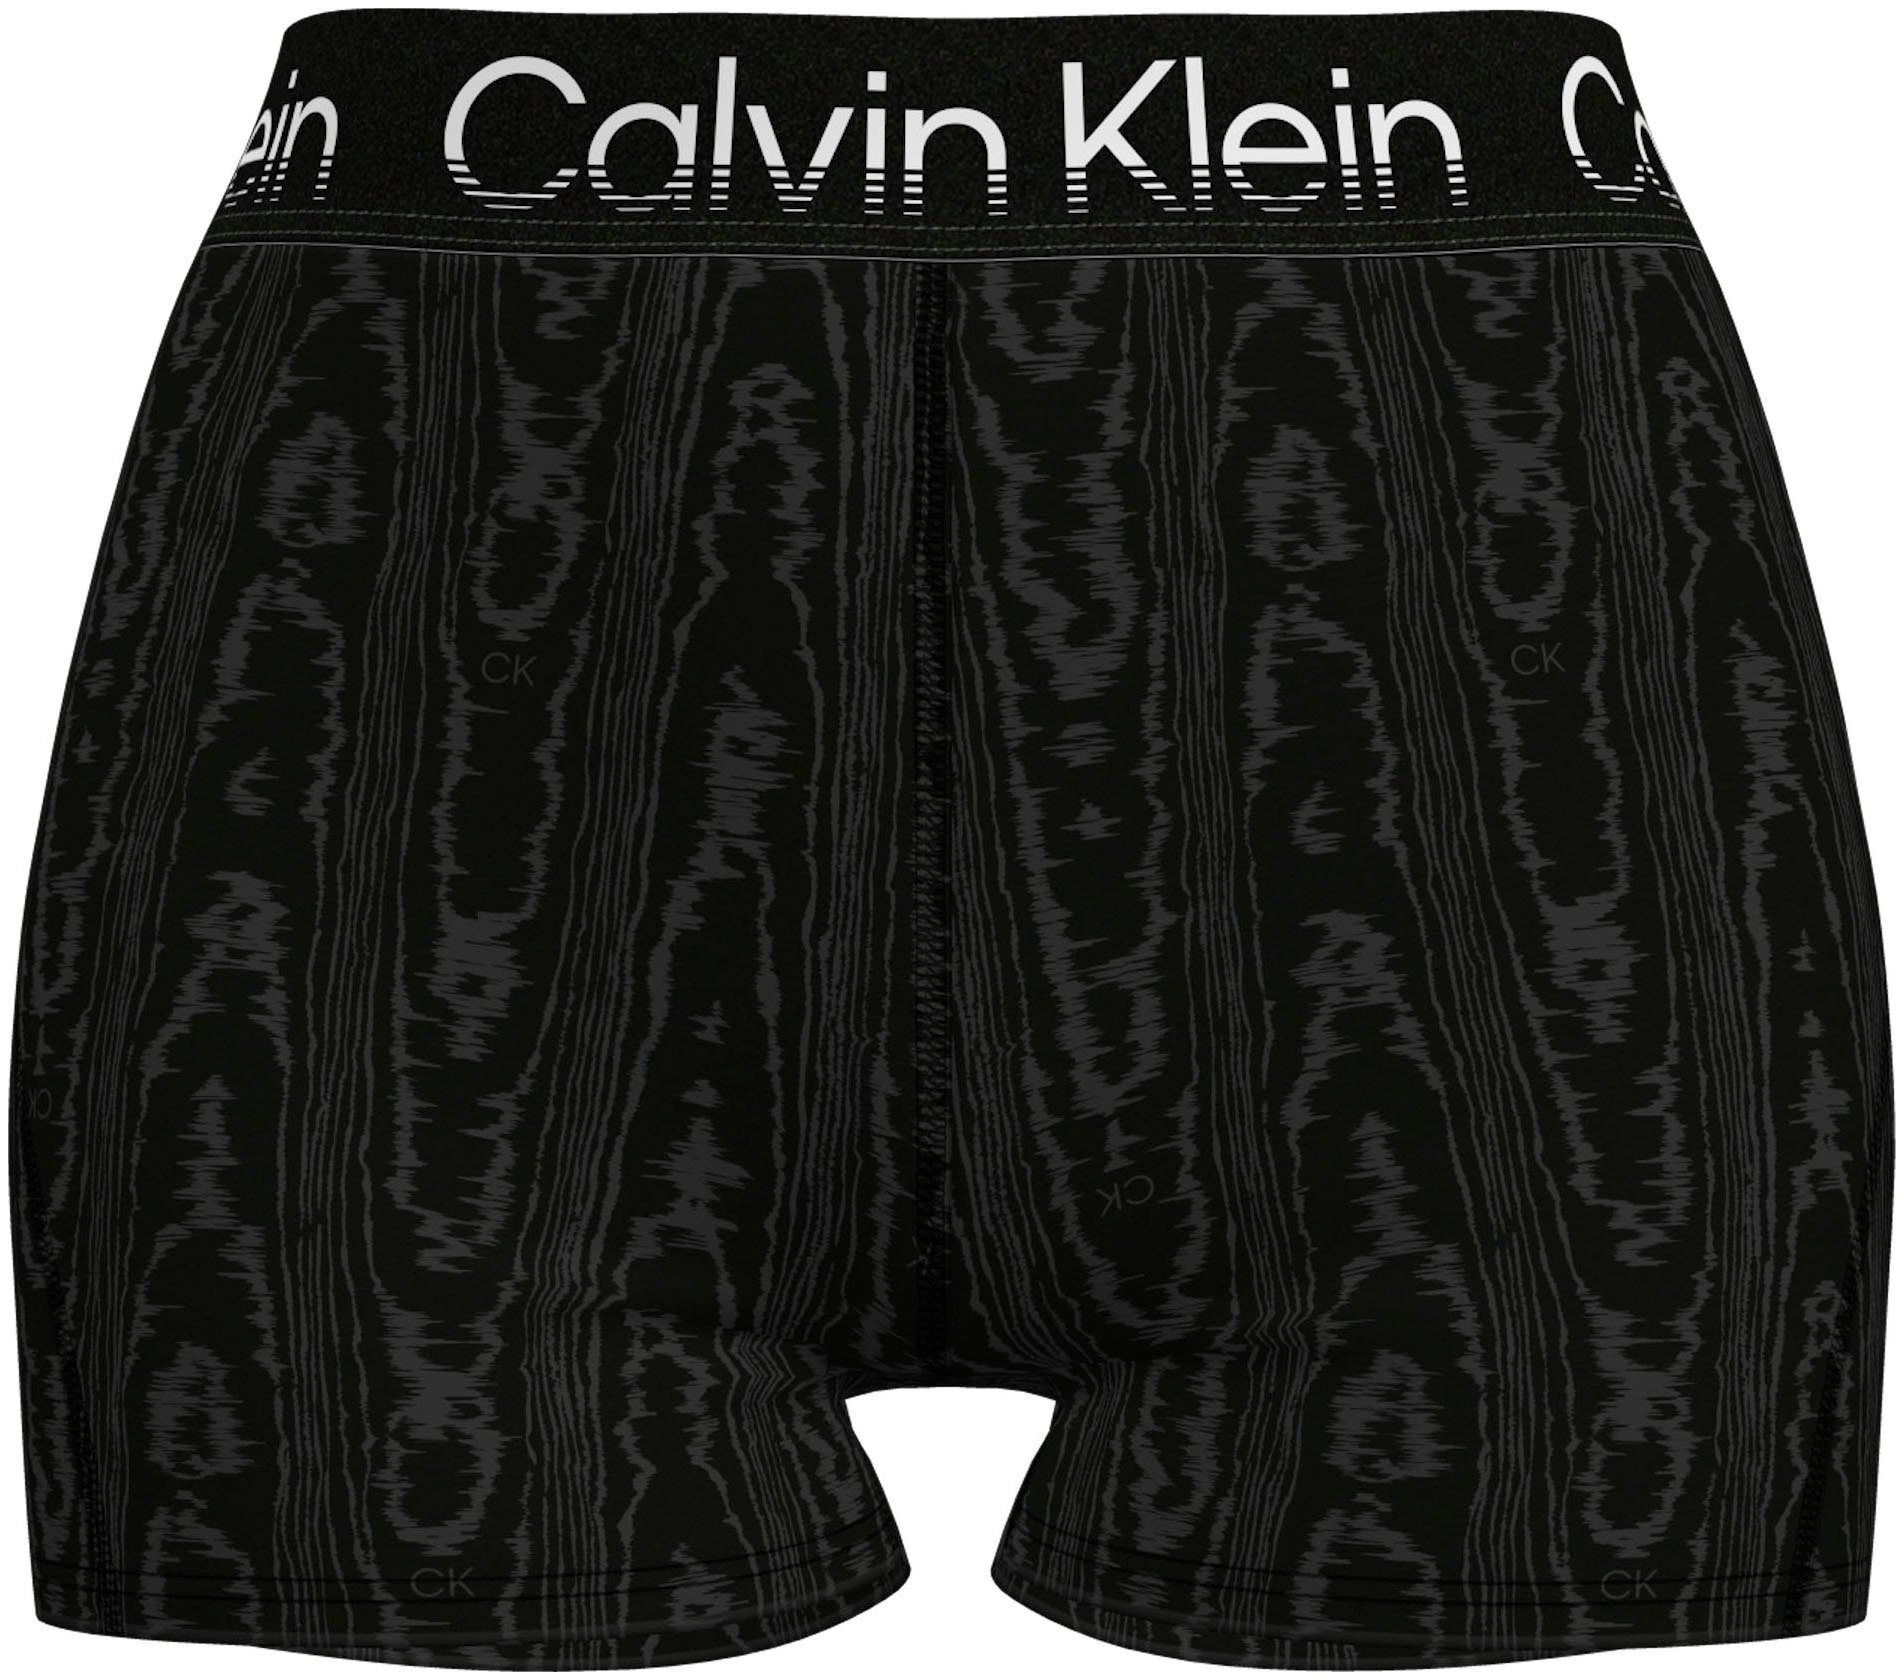 Calvin Klein Kurze Hose Damen online kaufen | OTTO